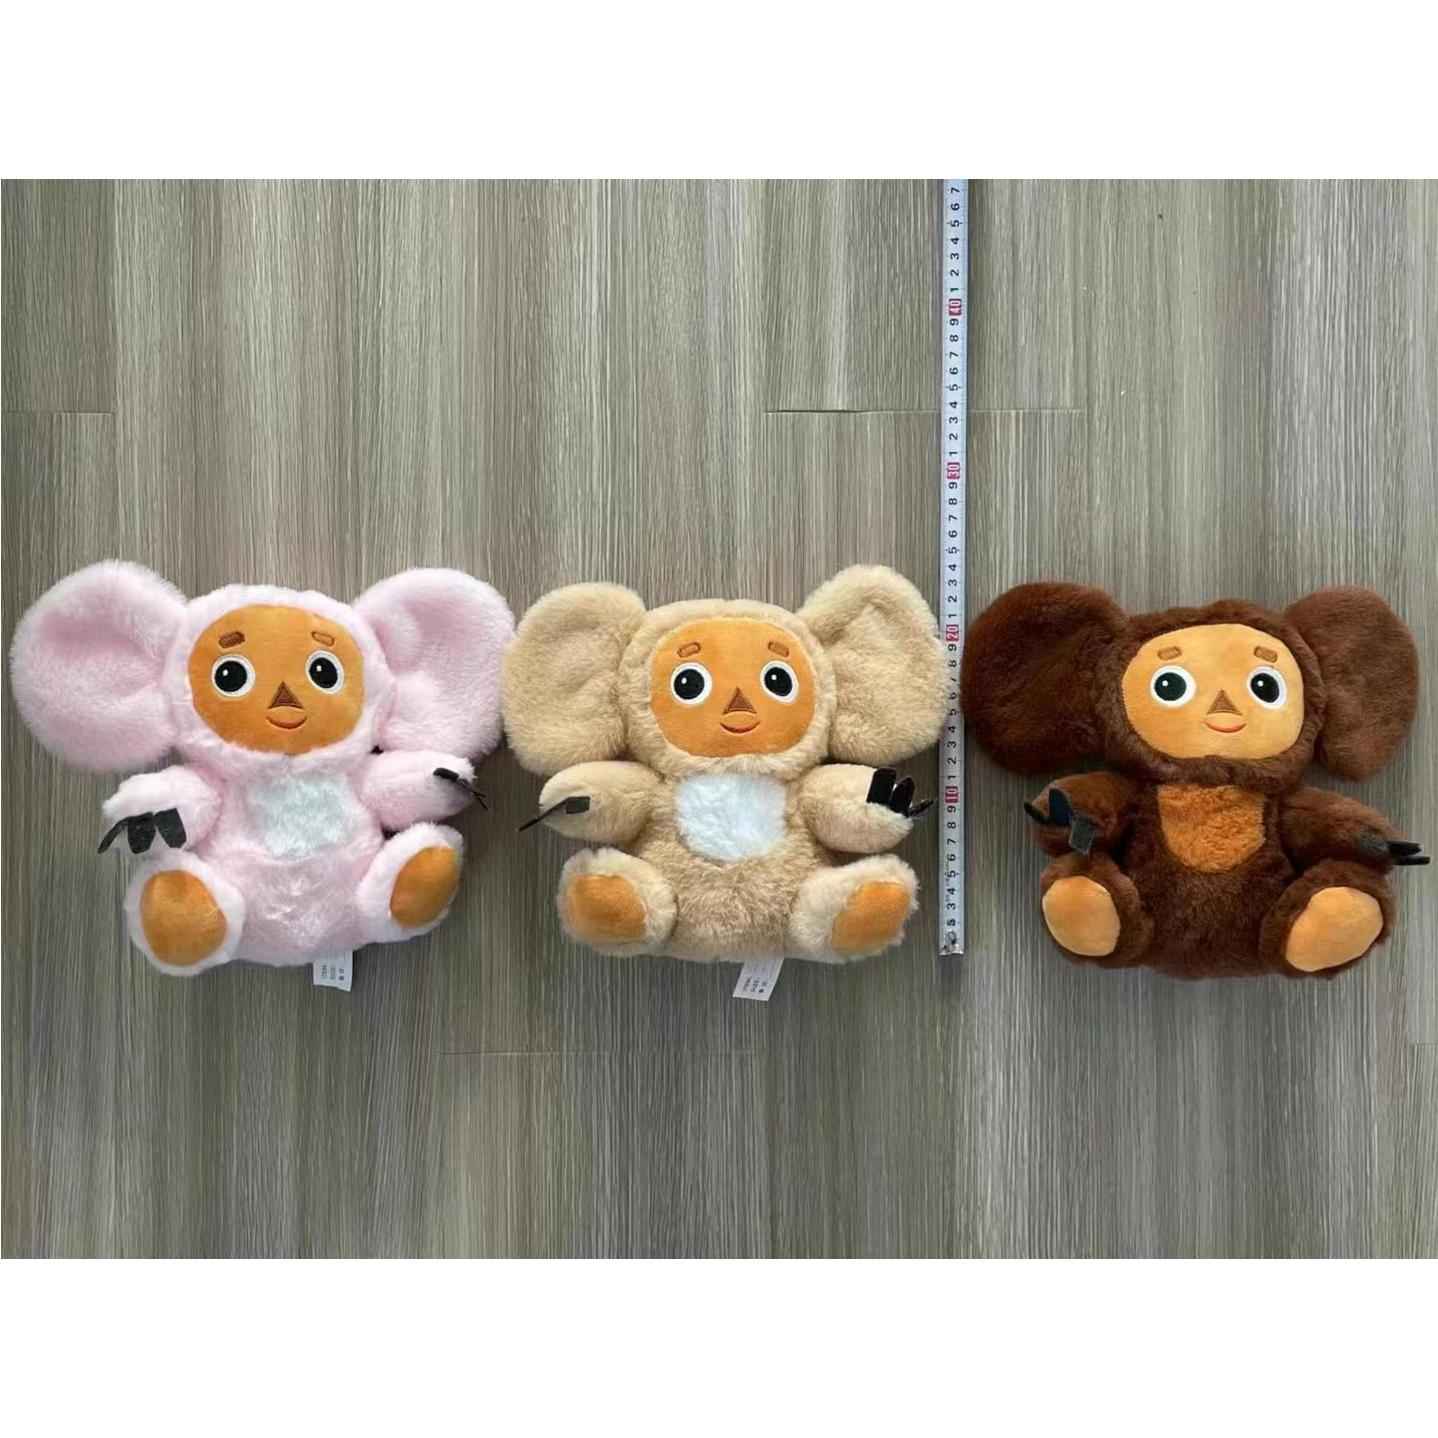 新品Cheburashka Monkey Plush 俄罗斯大耳猴子毛绒玩具公仔 - 图1